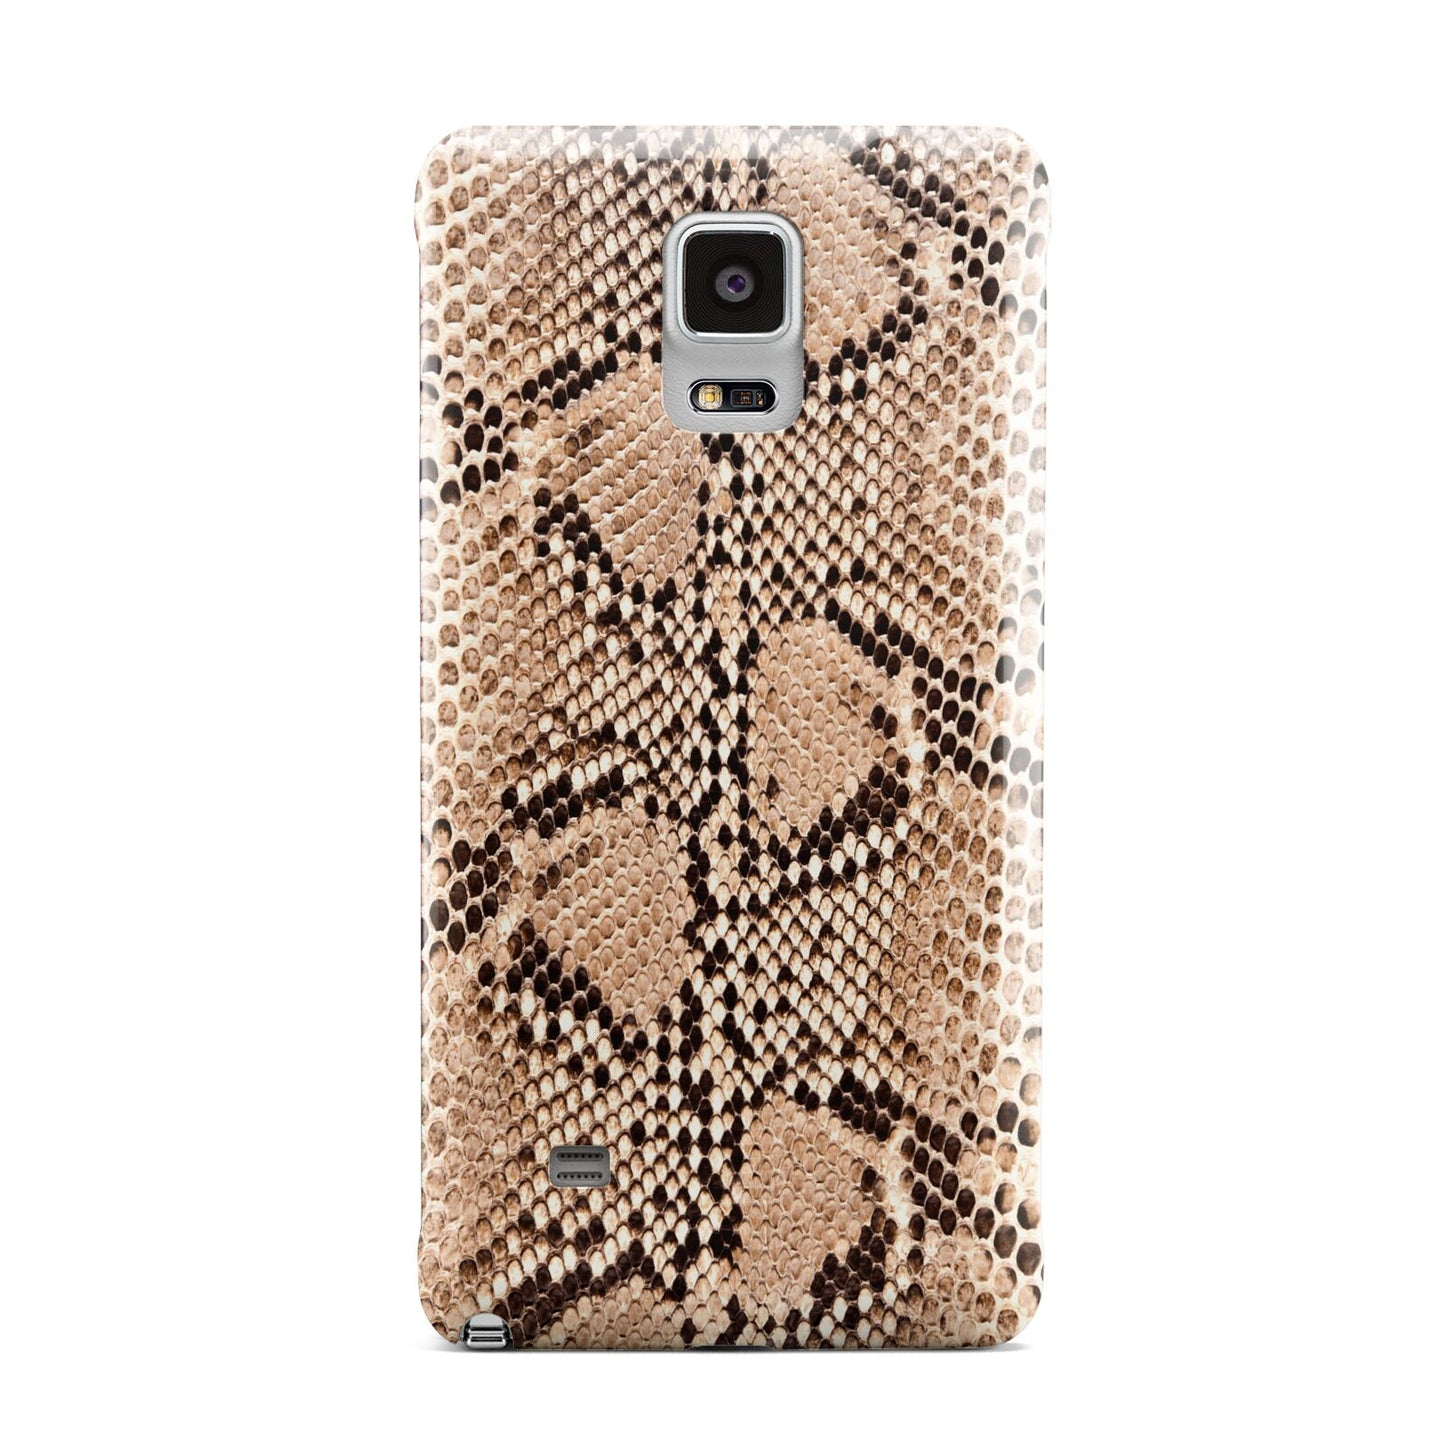 Snakeskin Samsung Galaxy Note 4 Case